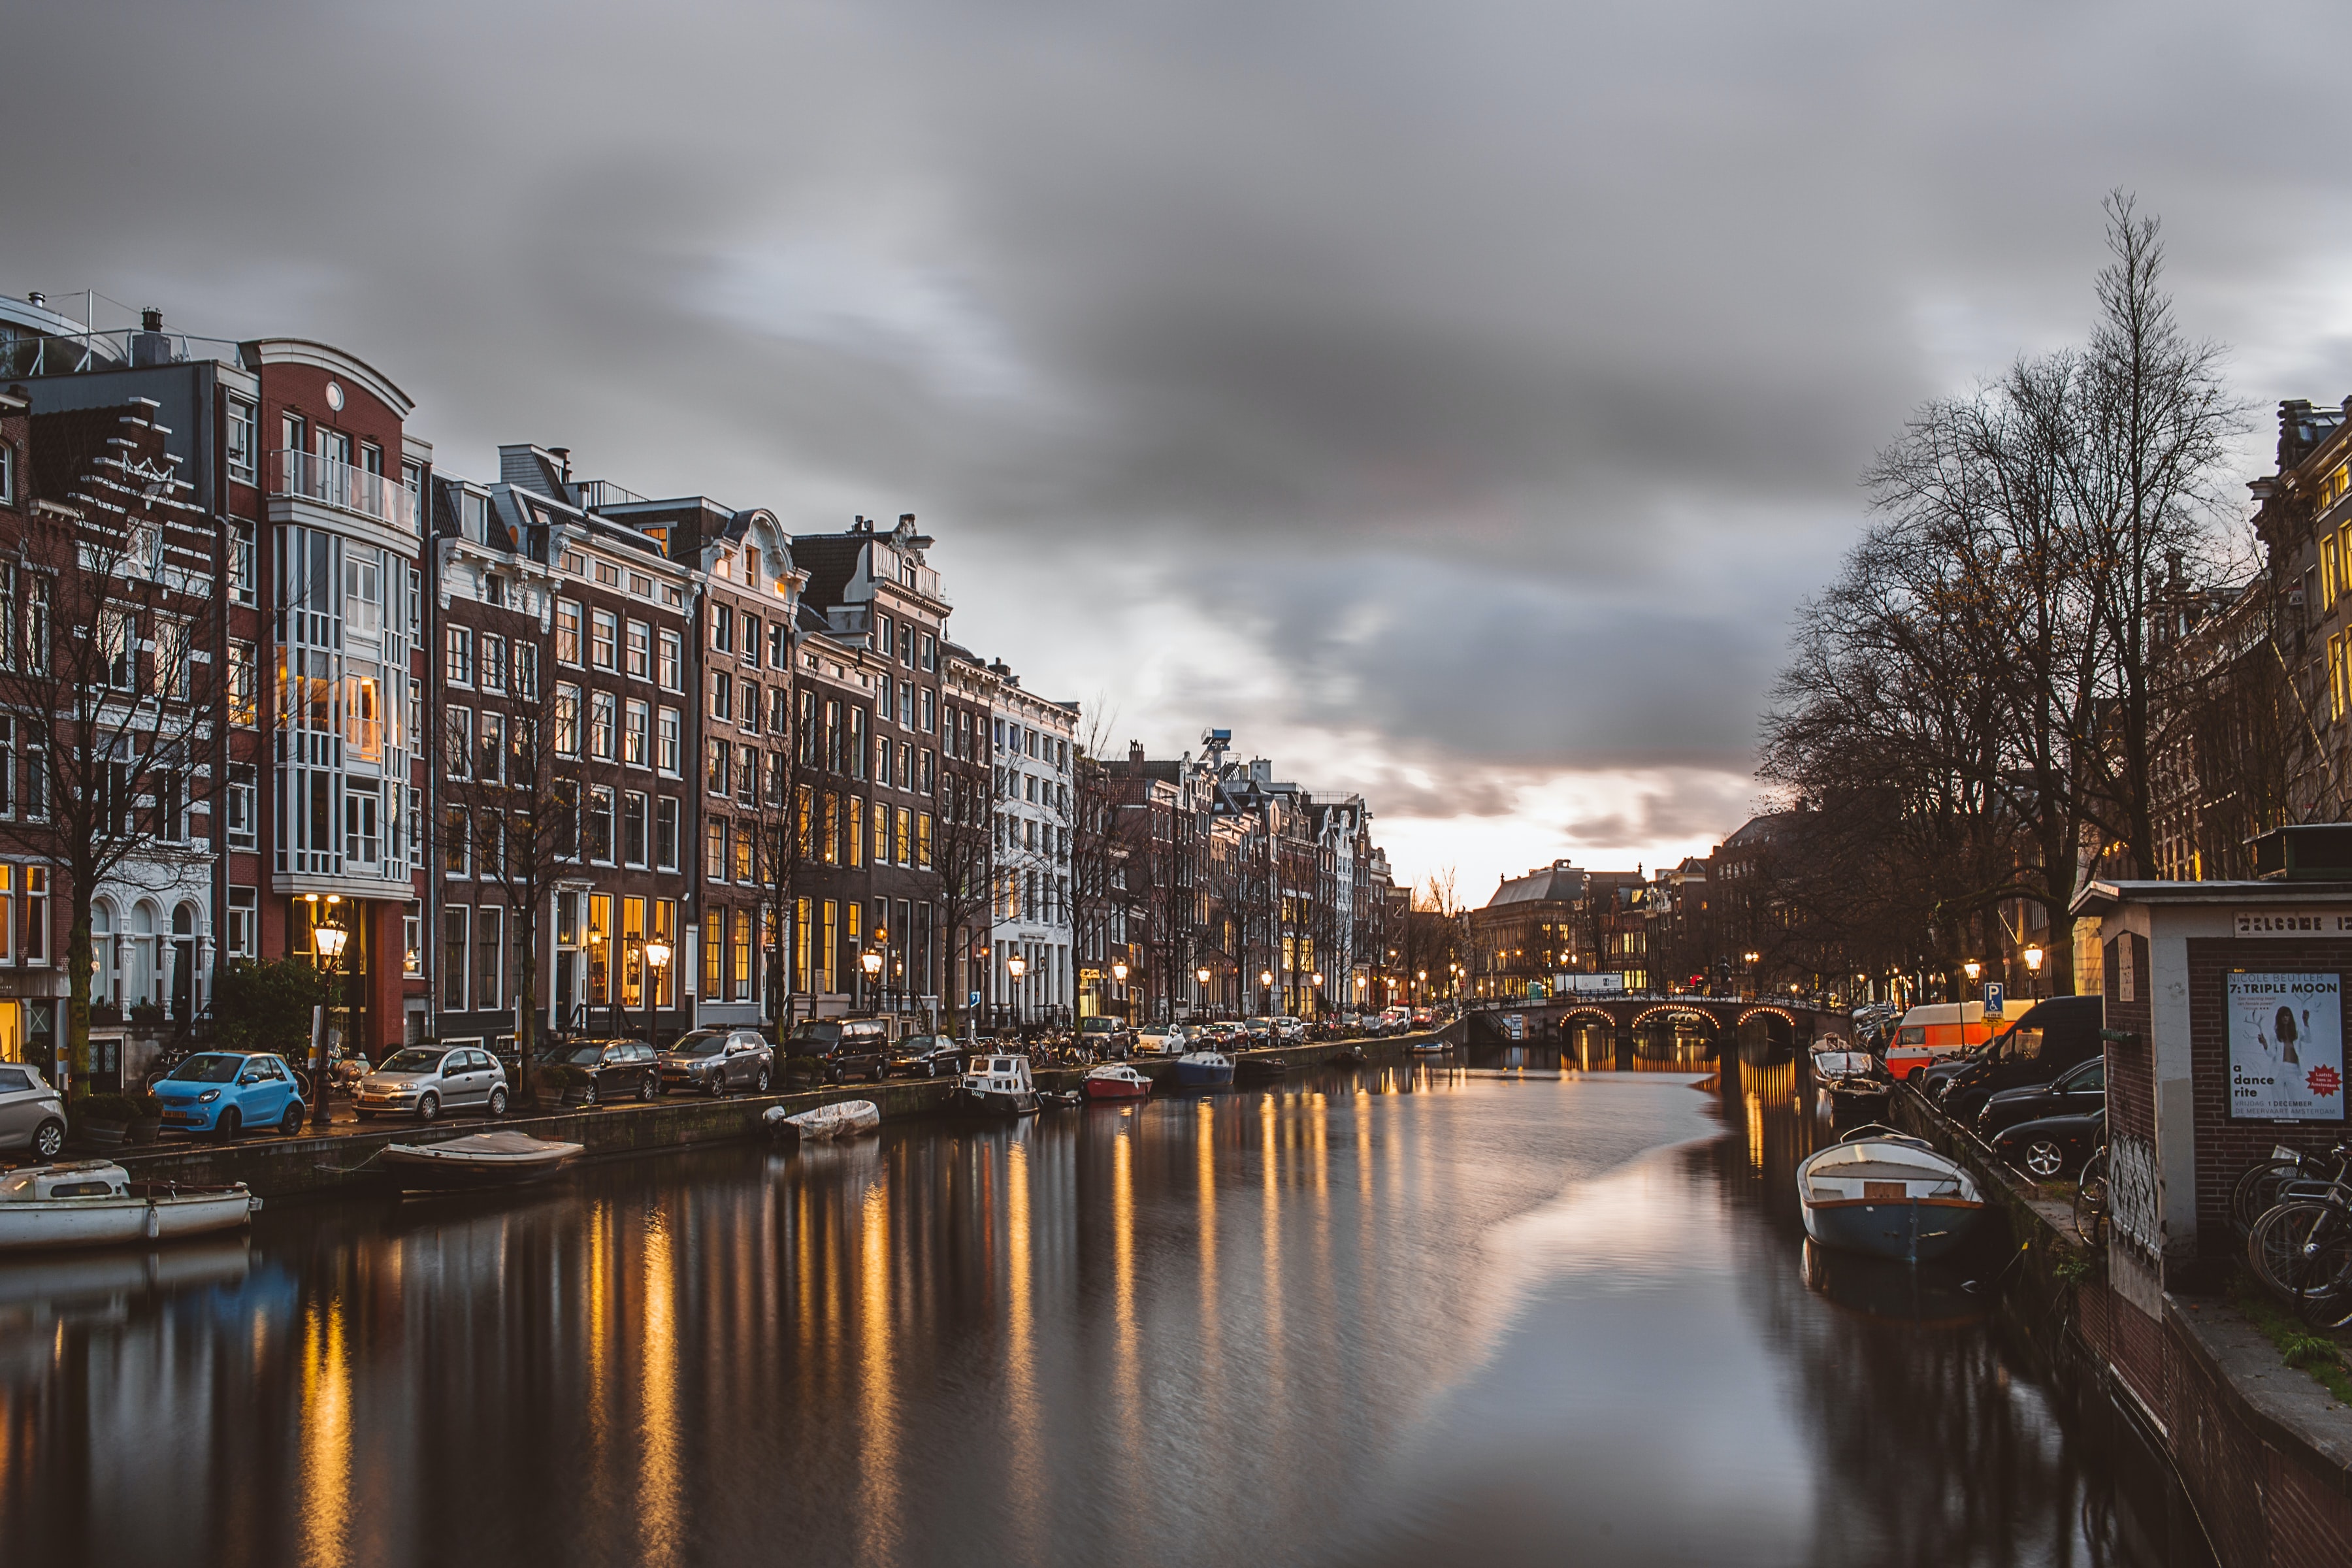 네덜란드 암스테르담 도시에 있는 운하와 운하 위에 있는 배 및 건물들의 모습